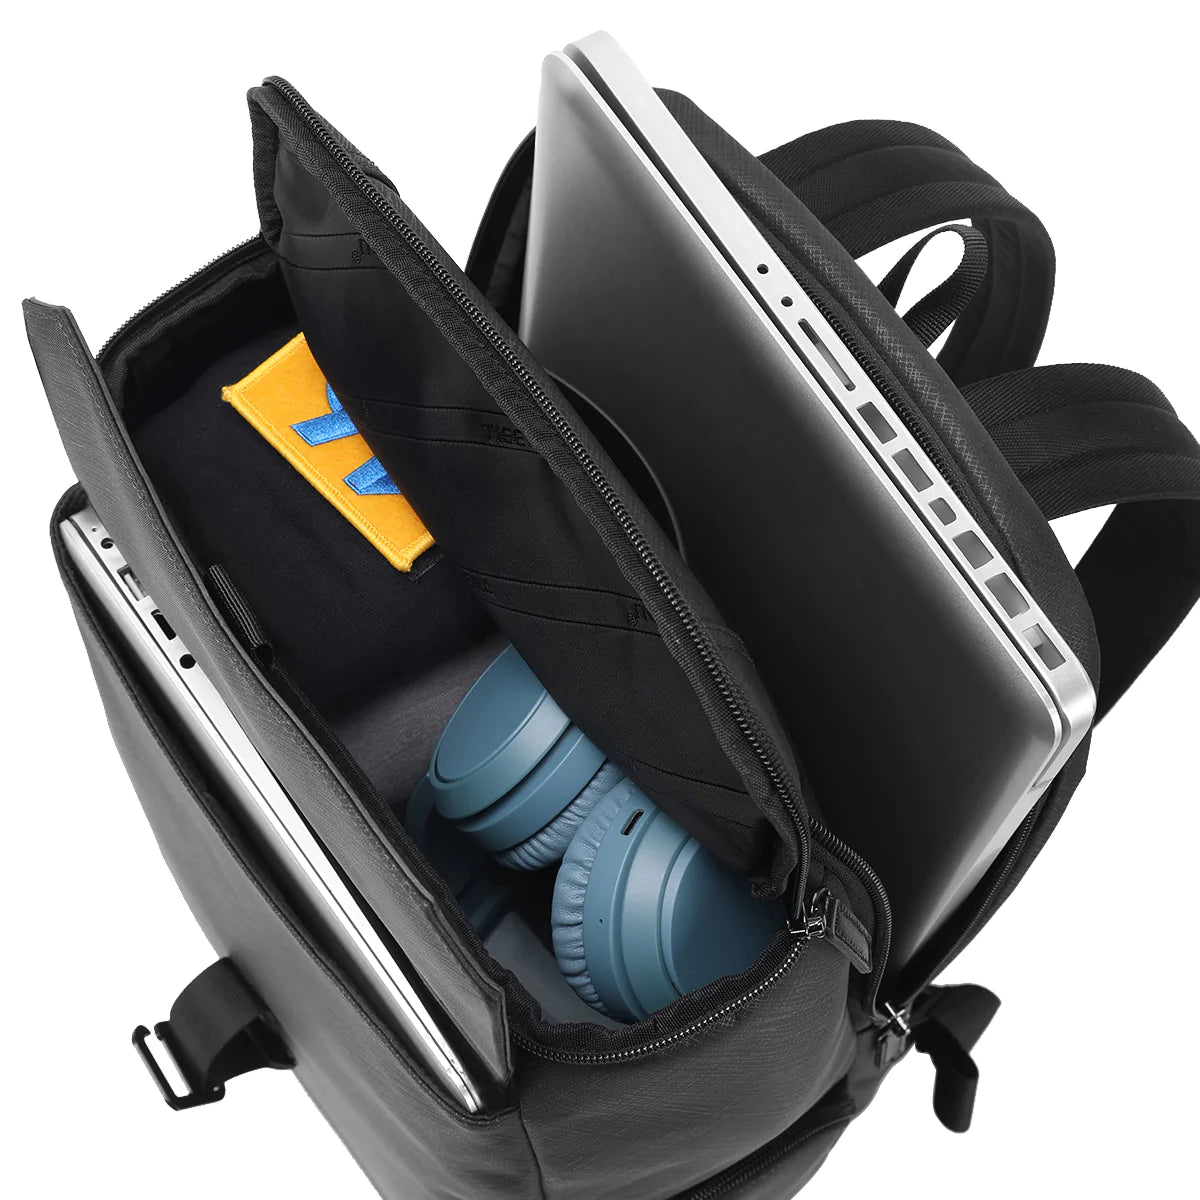 Tigernu TB-L Lead Top Laptop Backpack Blue